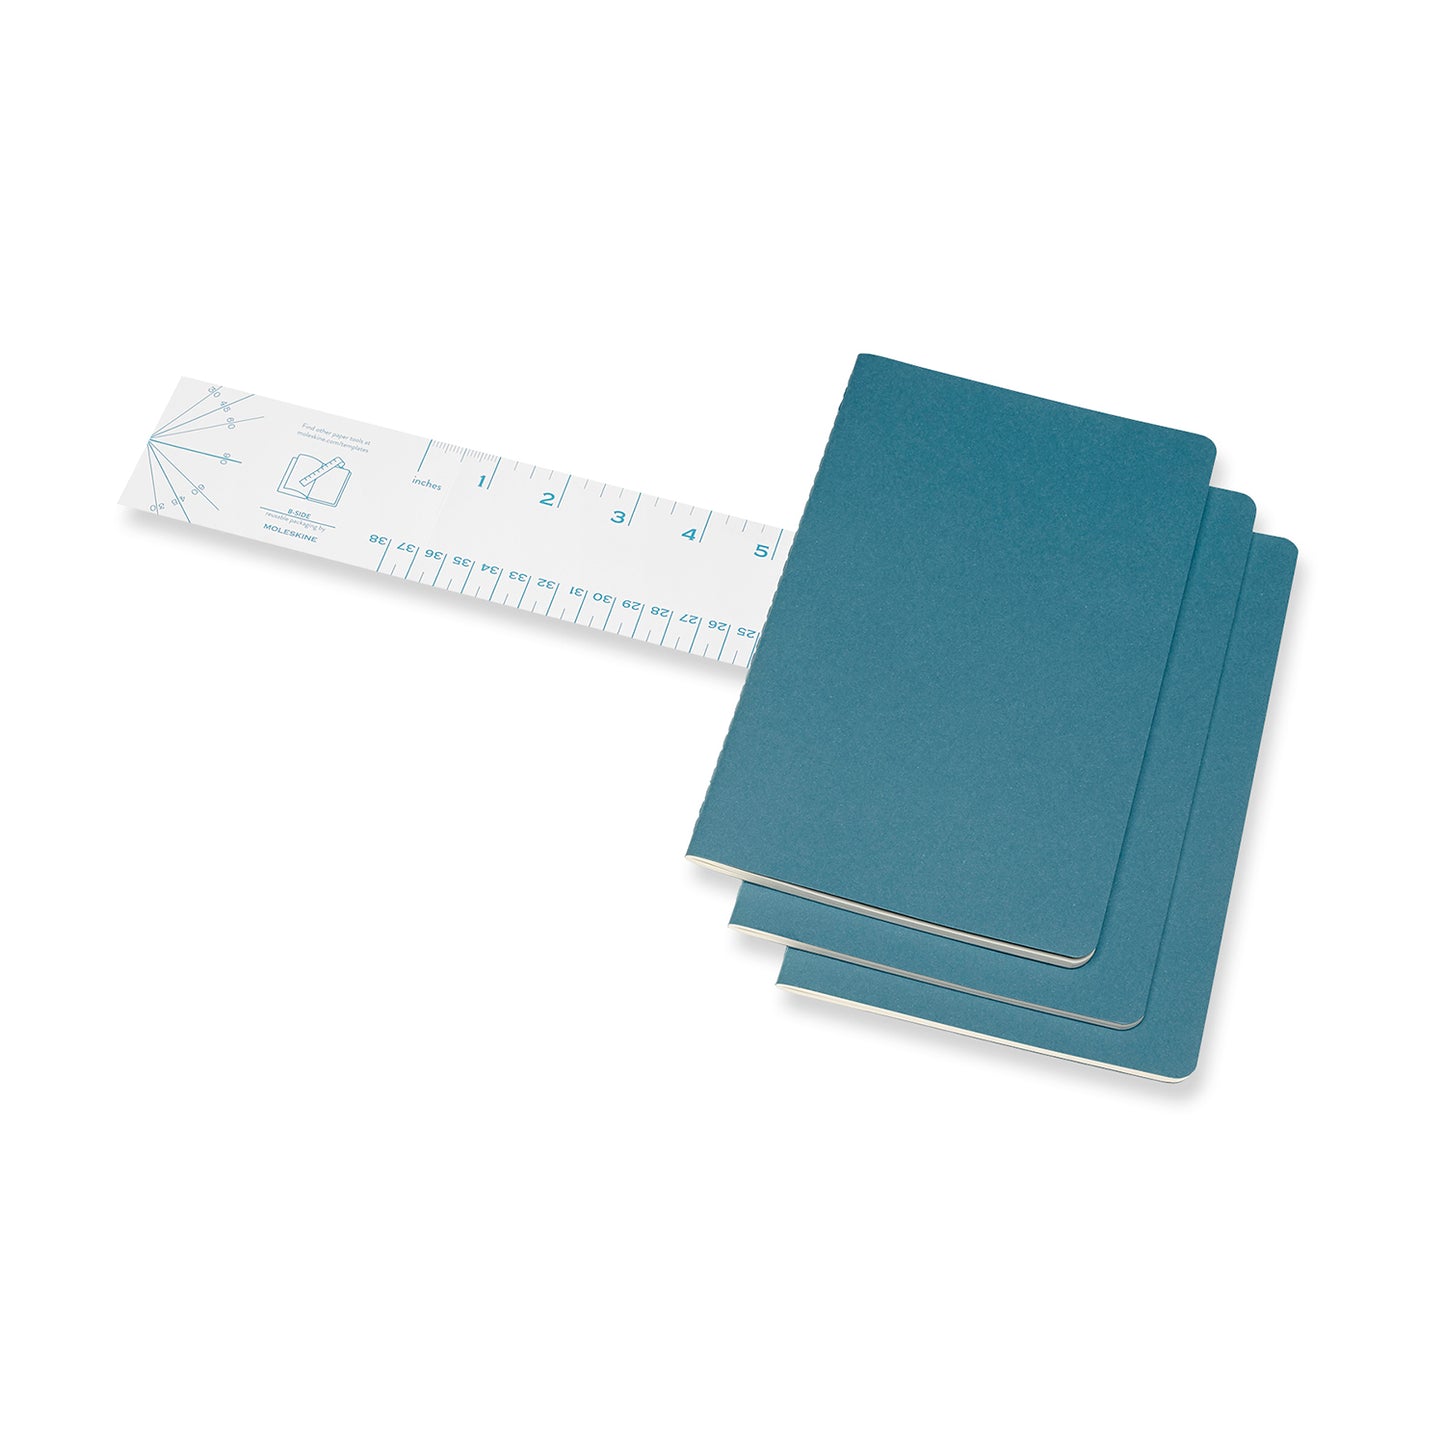 Steel Blue Large Cahier Notebook - Set of 3 Black / Ruled / Large,Black / Plain / Large,Black / Dotted / Large,Black / Squared / Large,Brisk Blue / Ruled / Large,Brisk Blue / Plain / Large,Brisk Blue / Dotted / Large,Brisk Blue / Squared / Large Moleskine